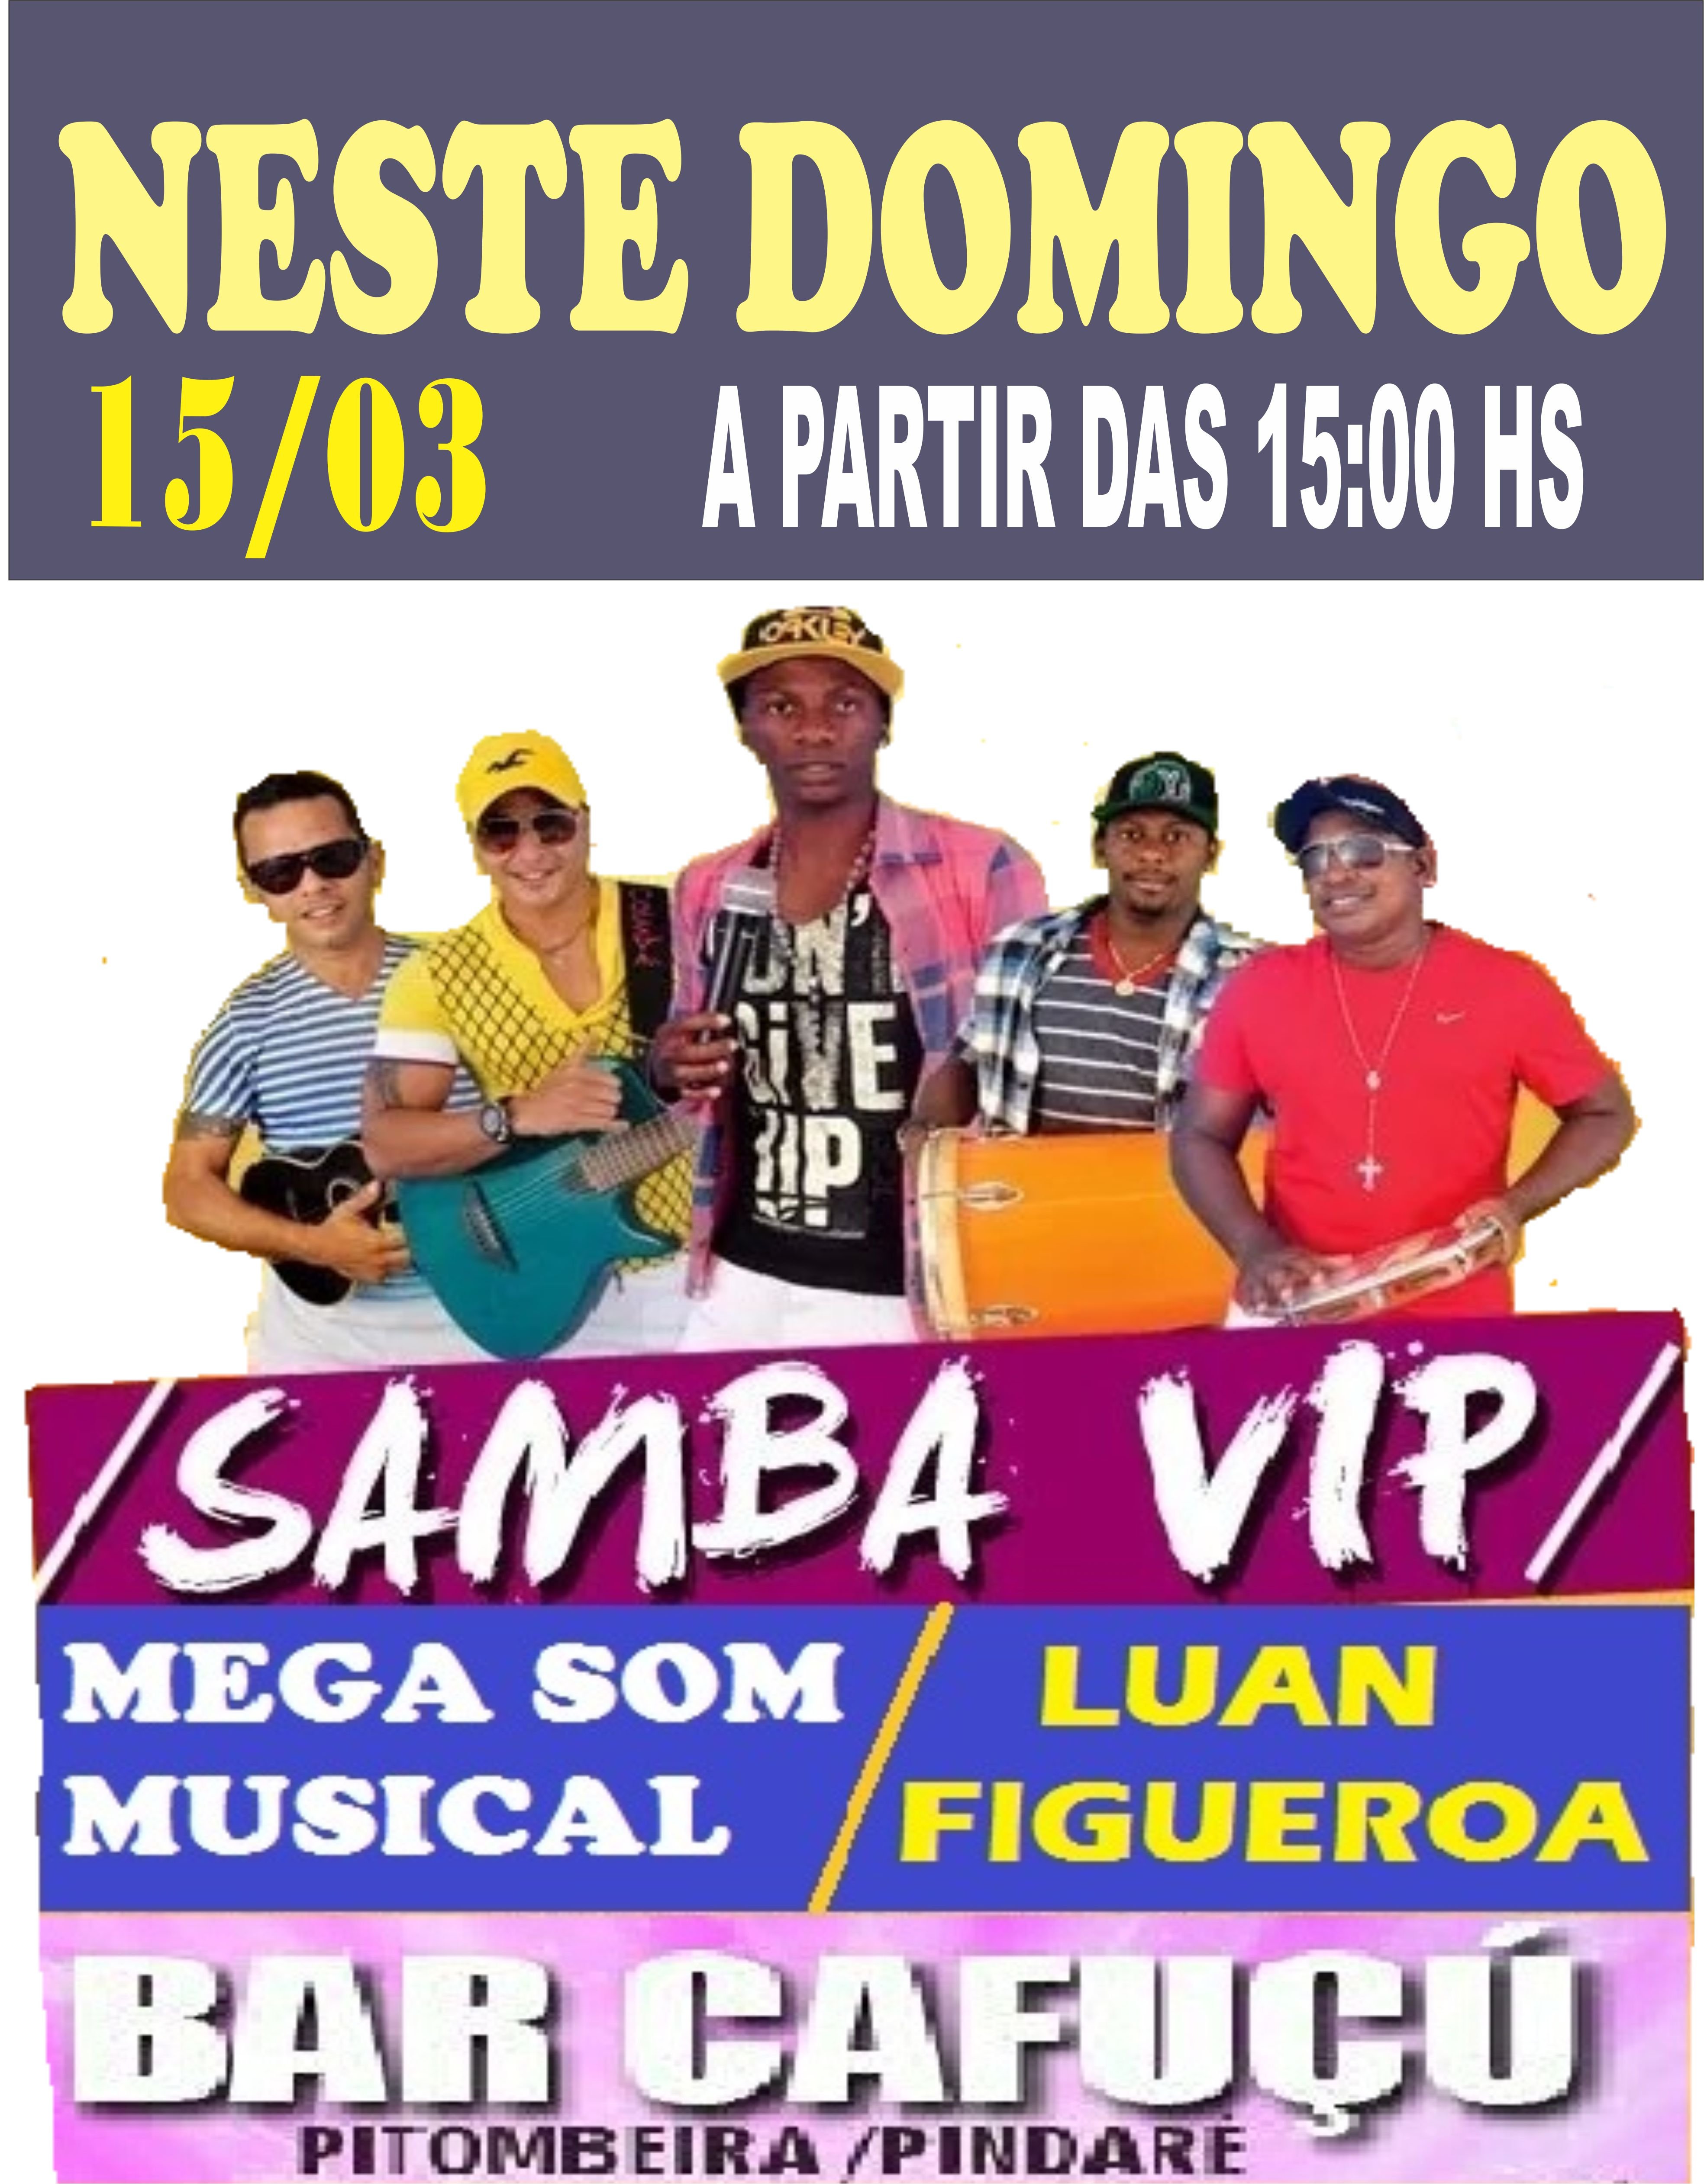 Neste domingo tem Samba Vip no Bar Cafuçú, em Pindaré